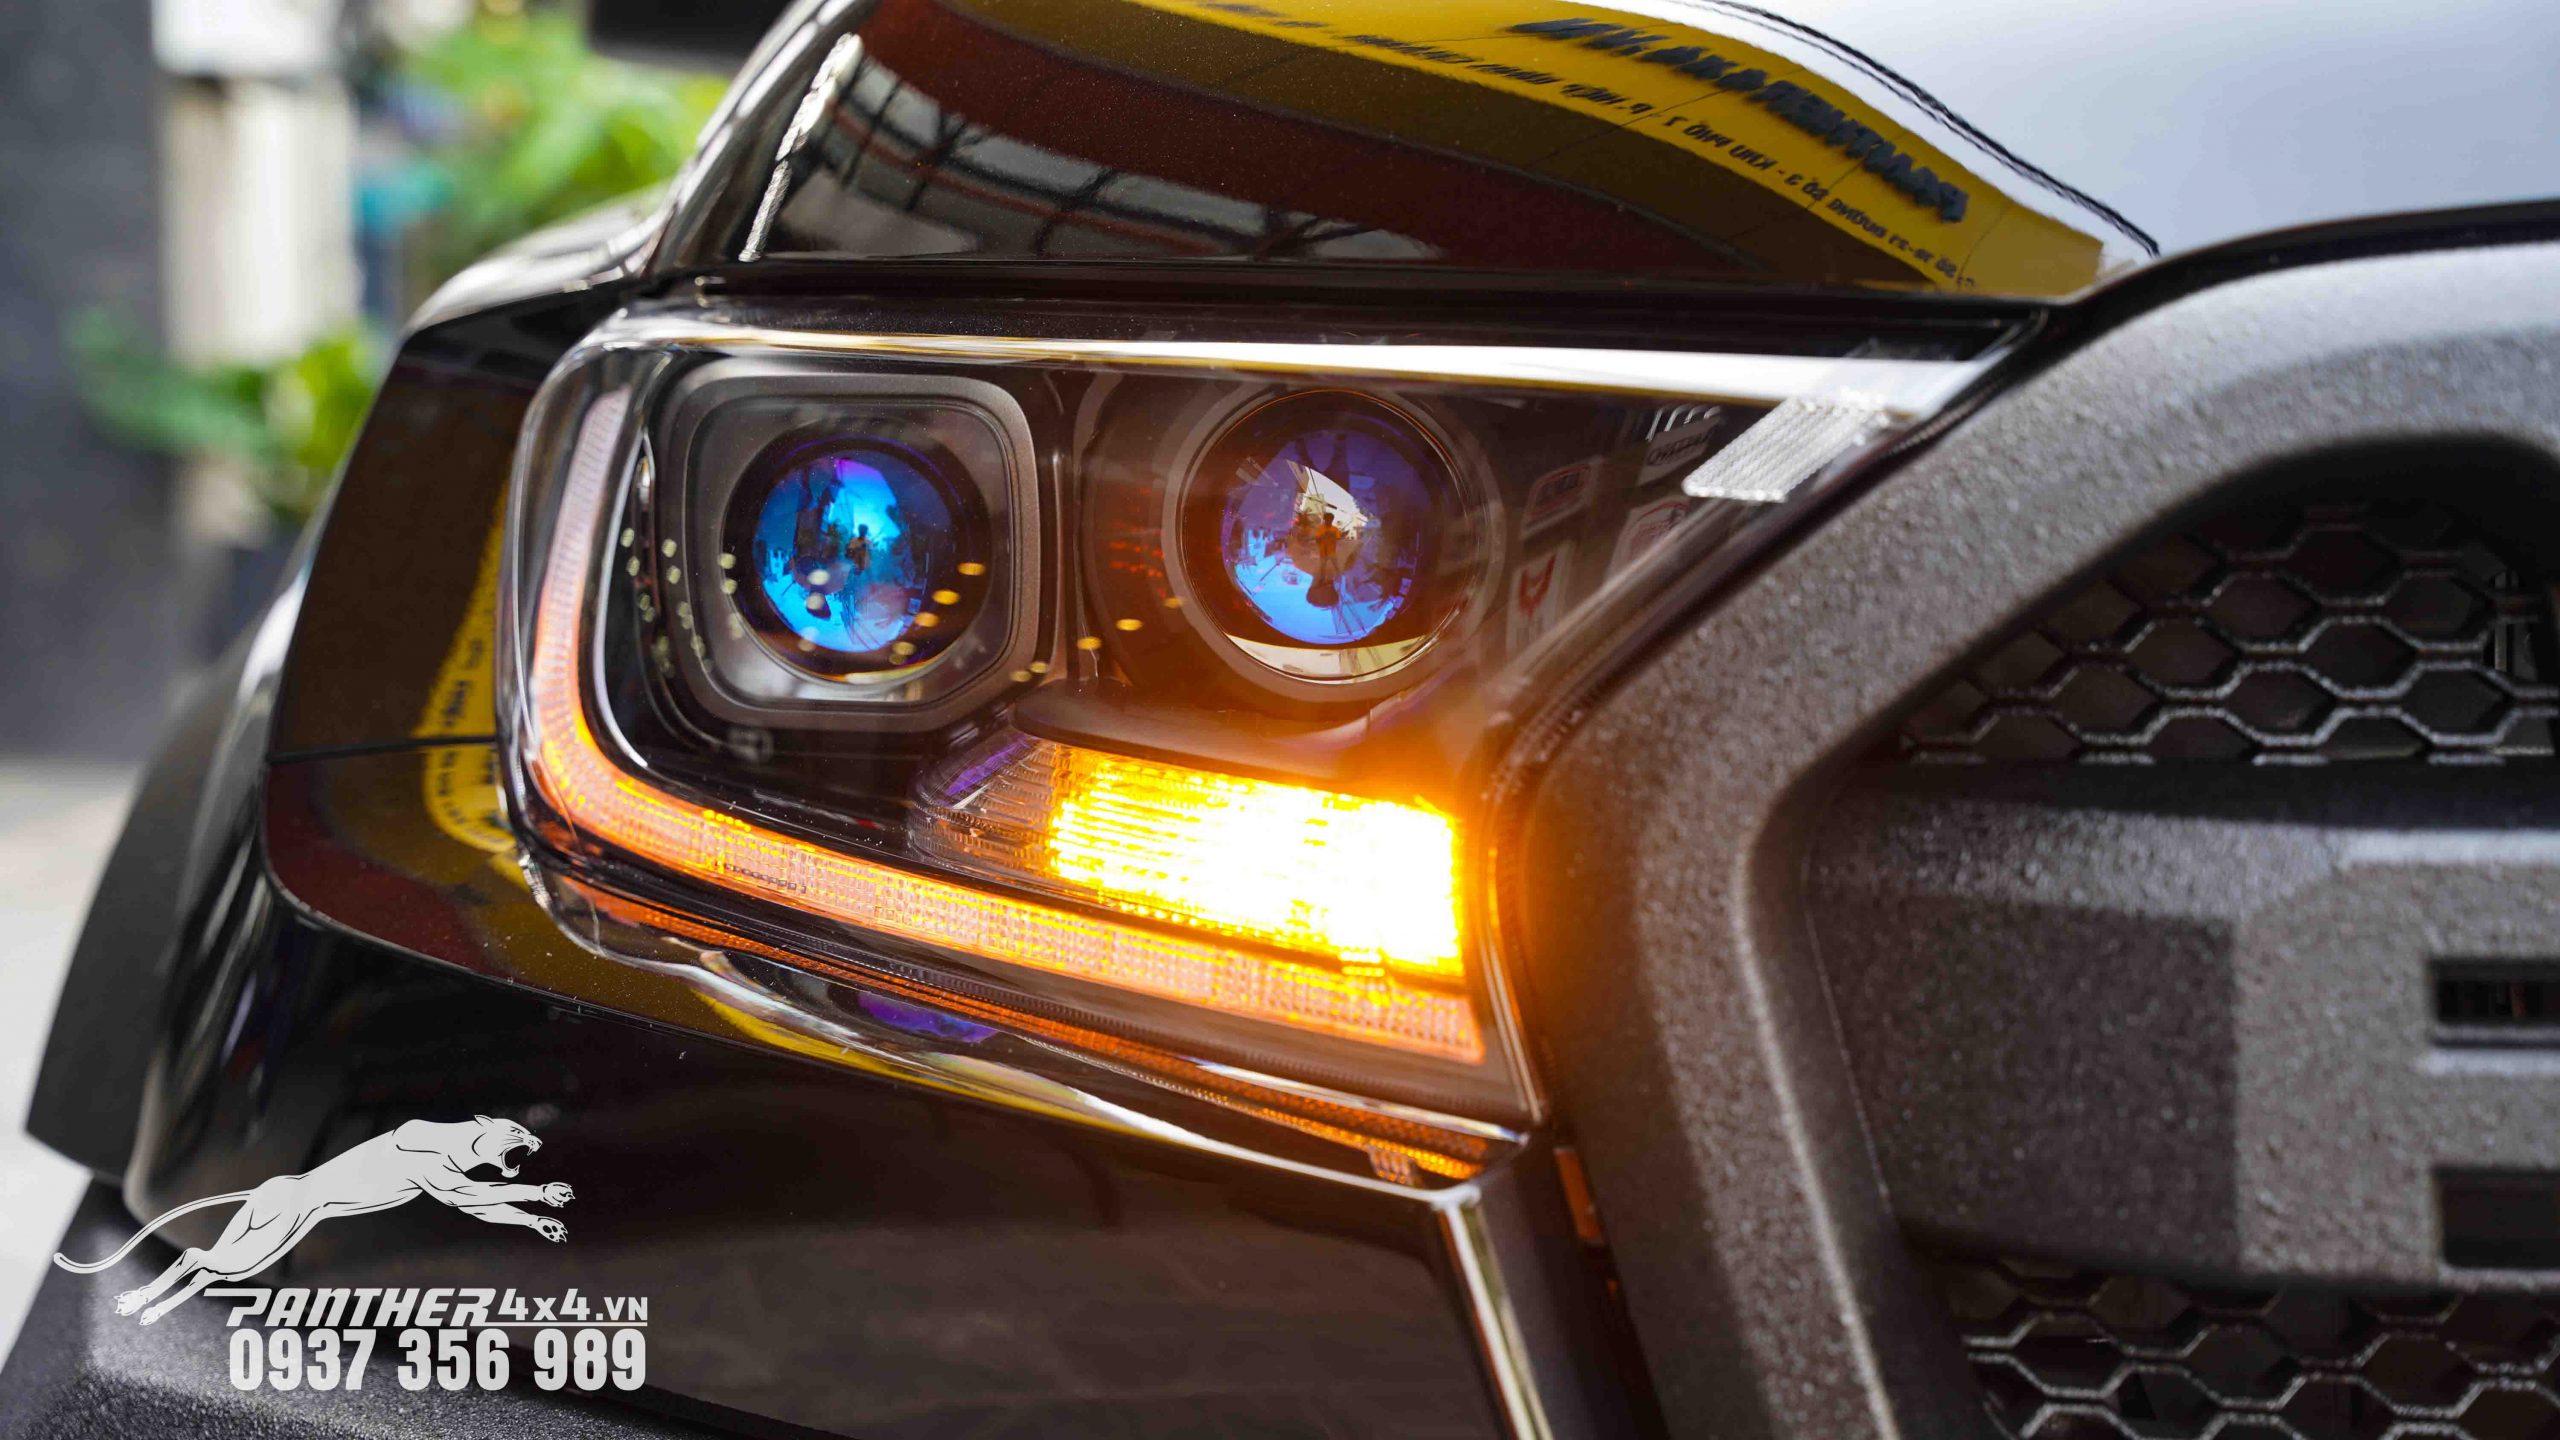 Độ đèn cho xe bán tải Ford Ranger XL đang được xem là một trào lưu mà nhiều chủ xe theo đuổi cũng như hướng tới cho xế yêu của mình. Ngoài những tính năng ưu việt ra thì nó còn thay chủ xe thể hiện được sự sang trọng và mạnh mẽ.